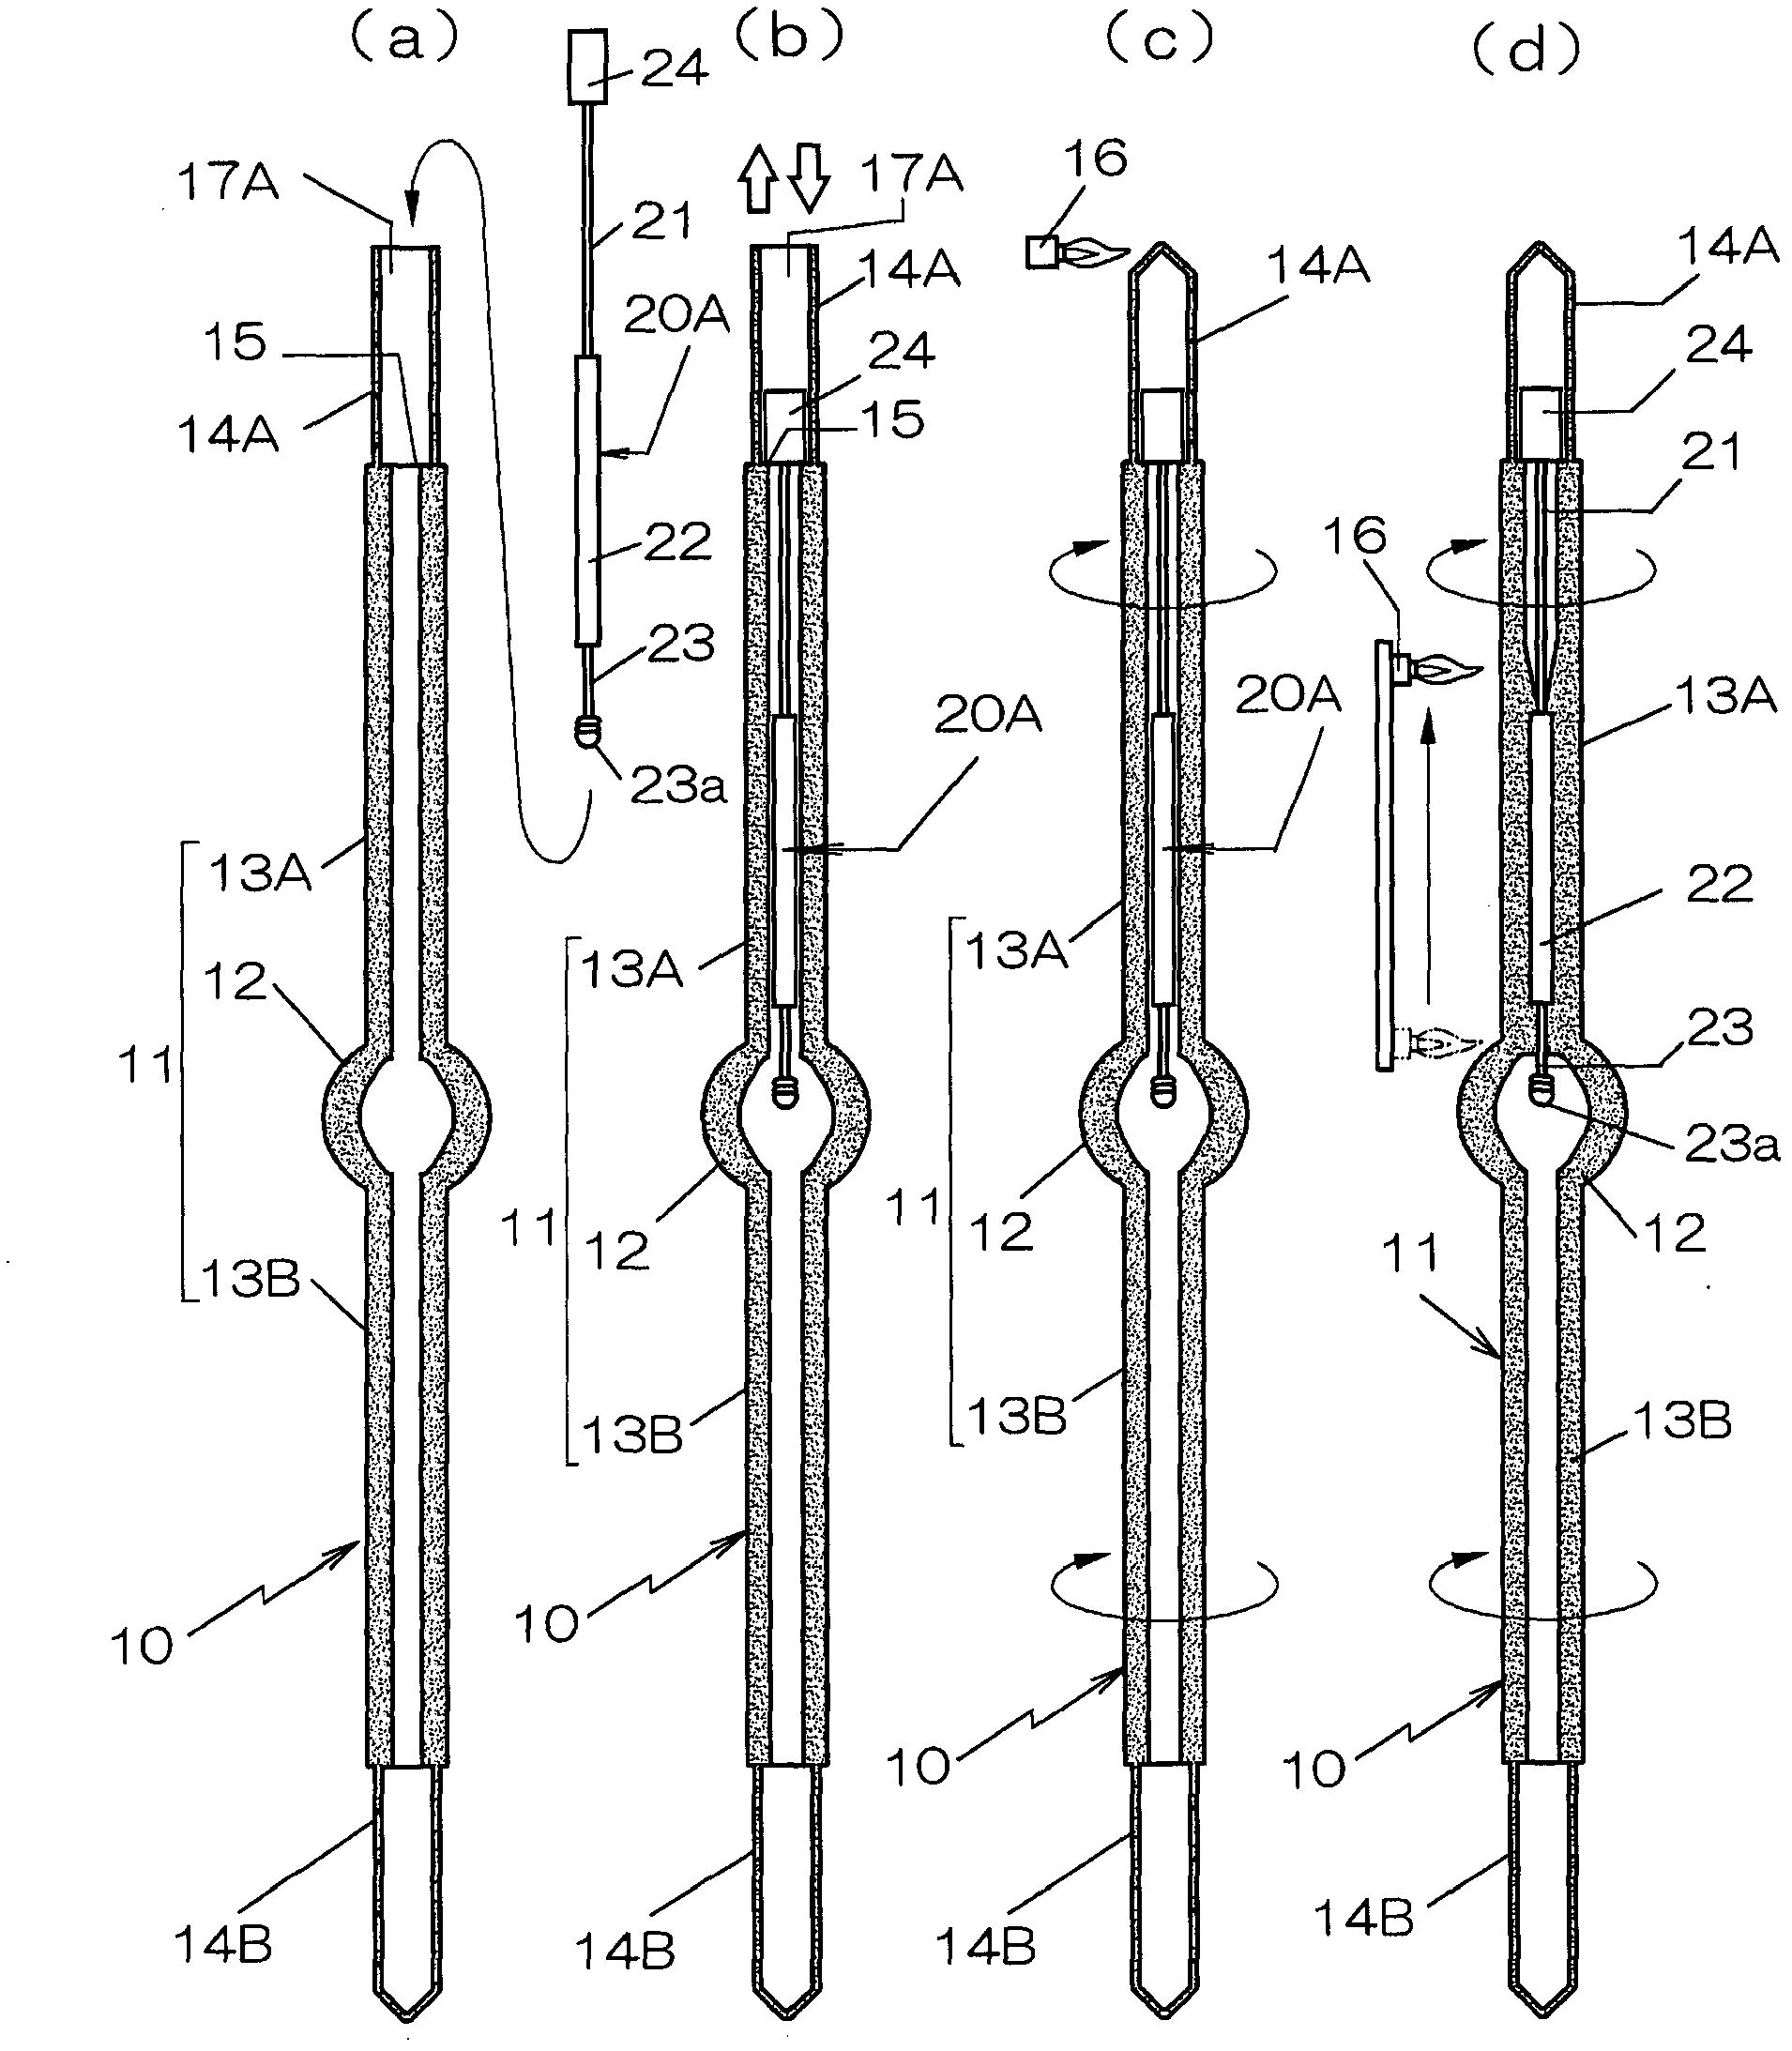 Method of manufacturing lamp and quartz bulb